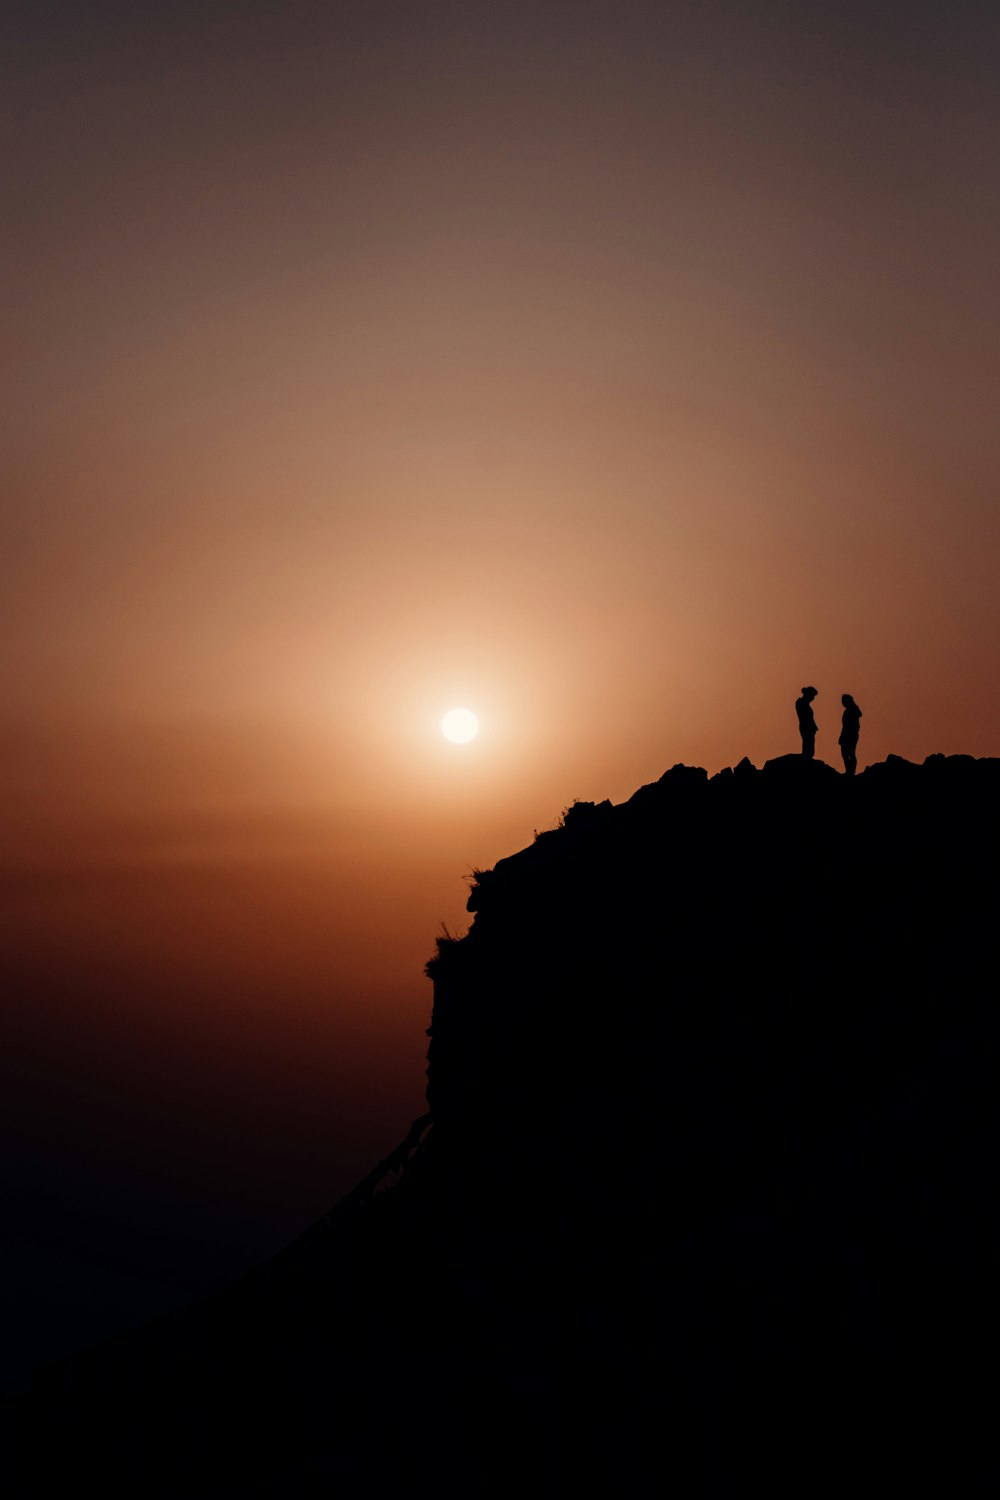 Silueta de 2 personas de pie en la formación rocosa durante la puesta del sol